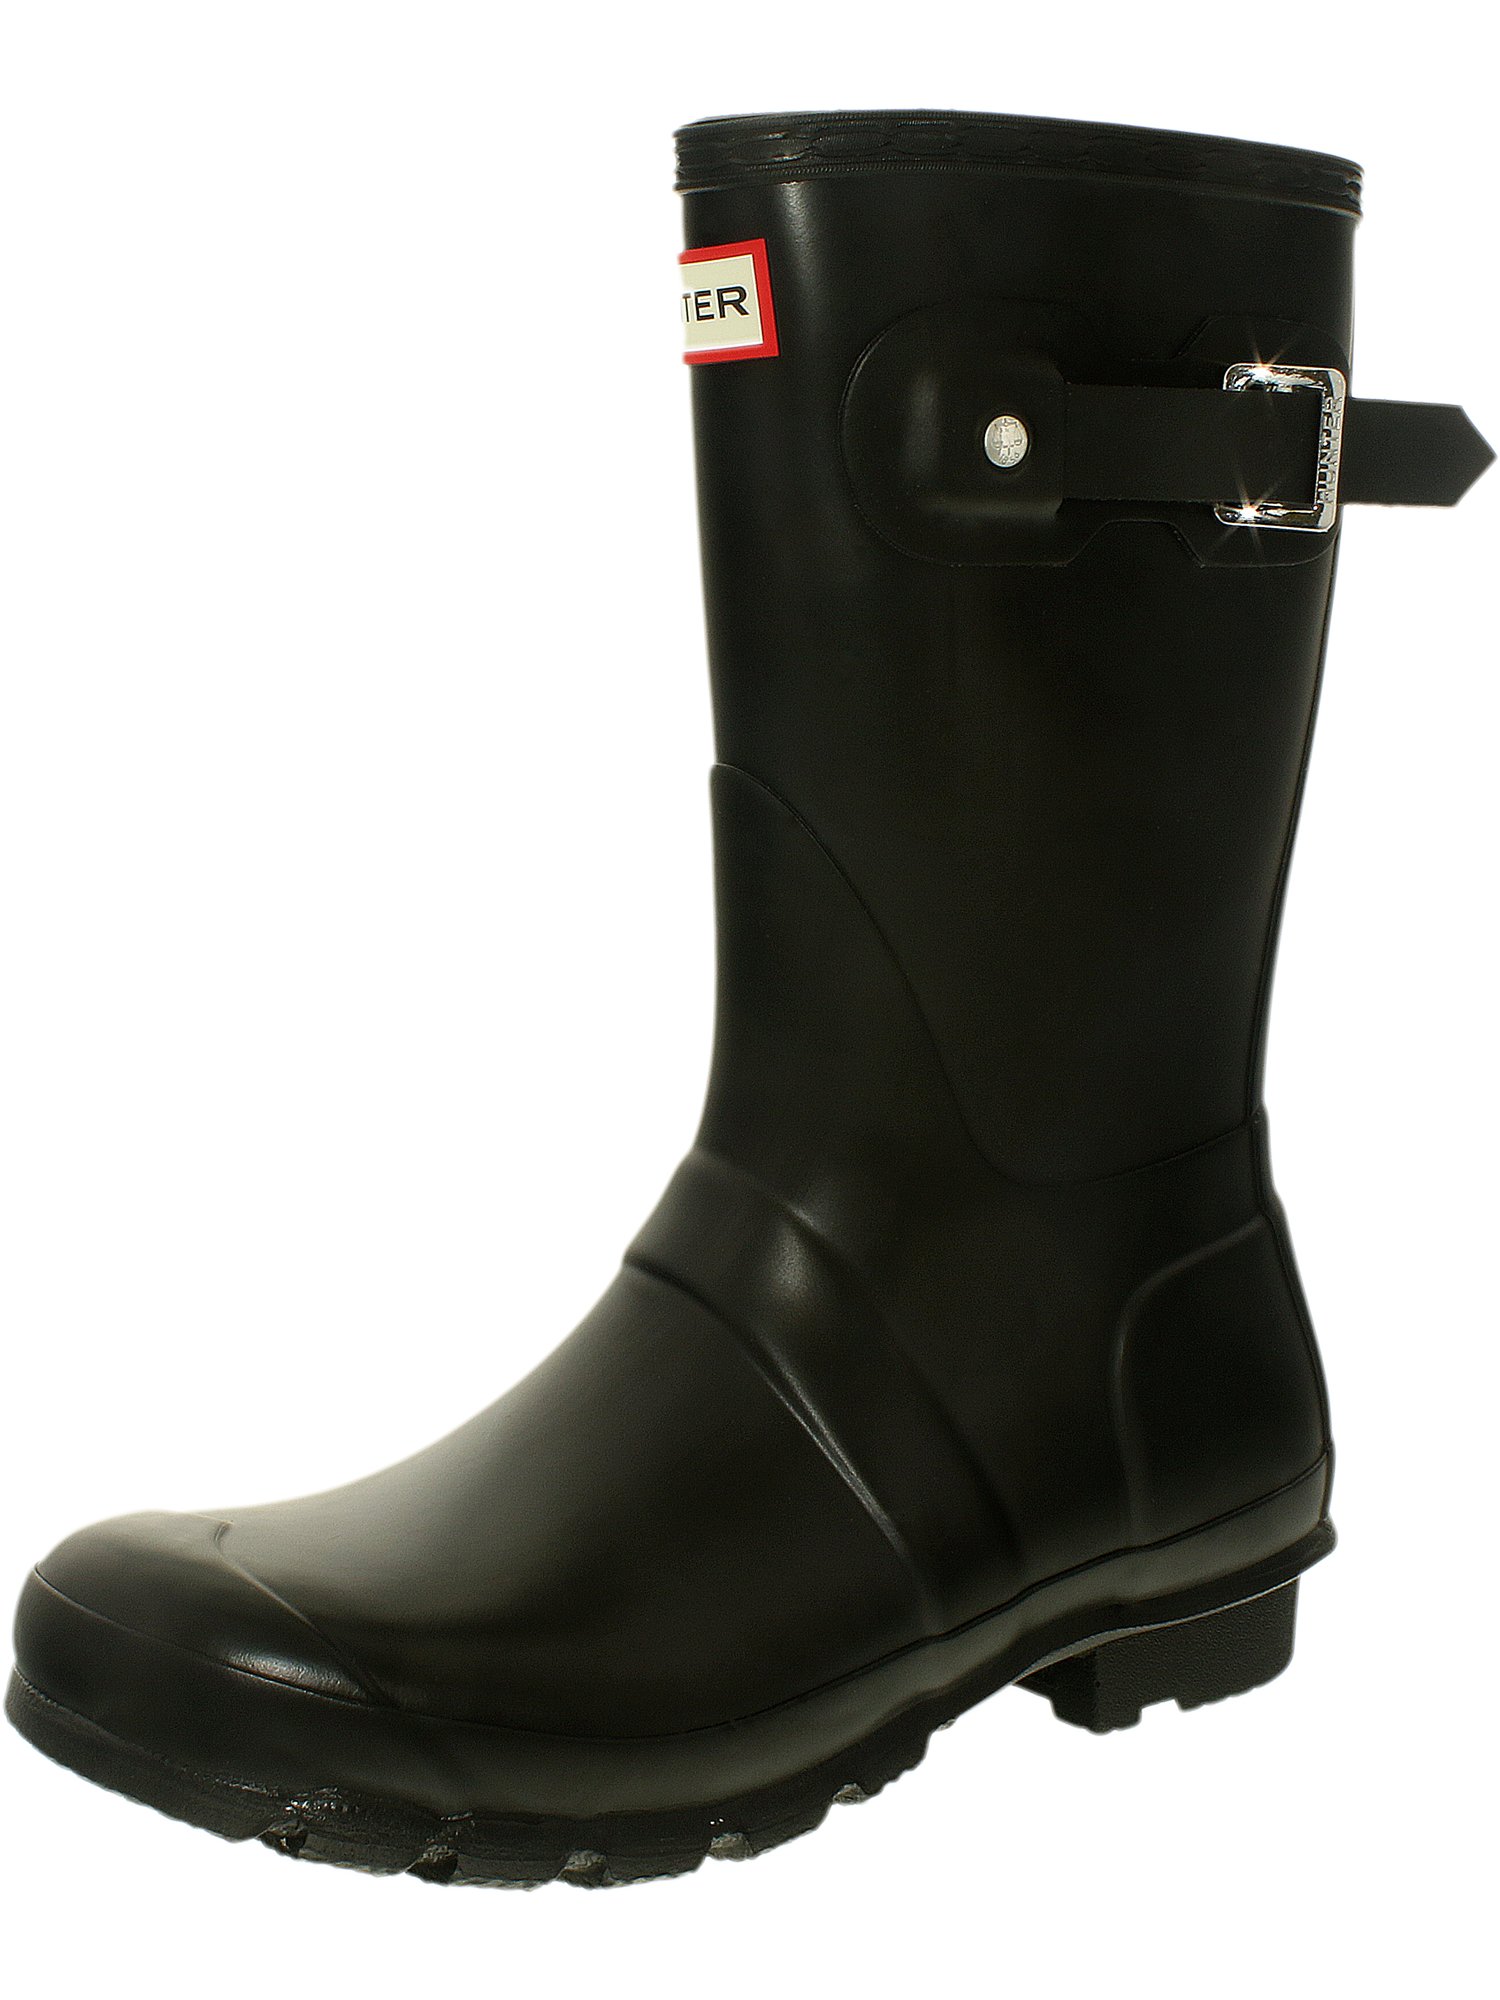 women's short rubber rain boots